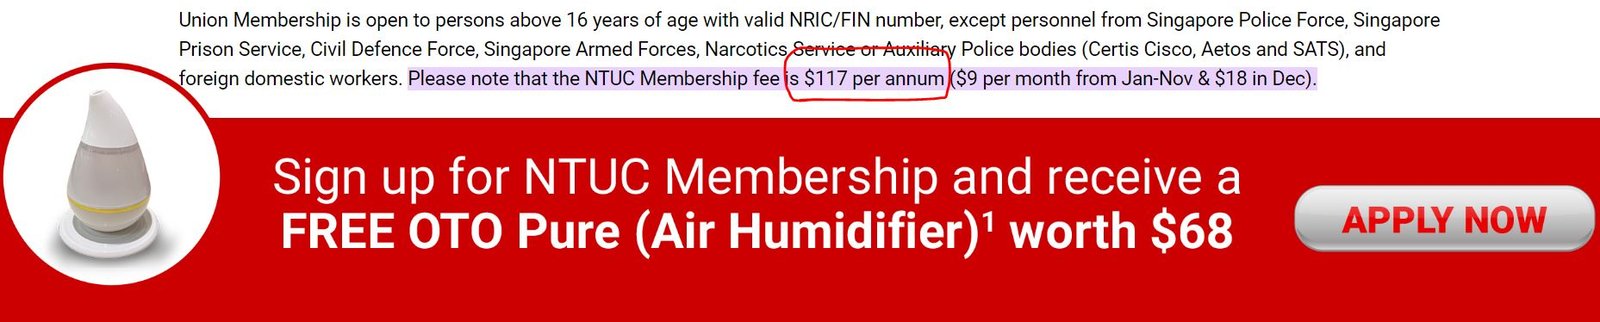 NTUC Union membership fee